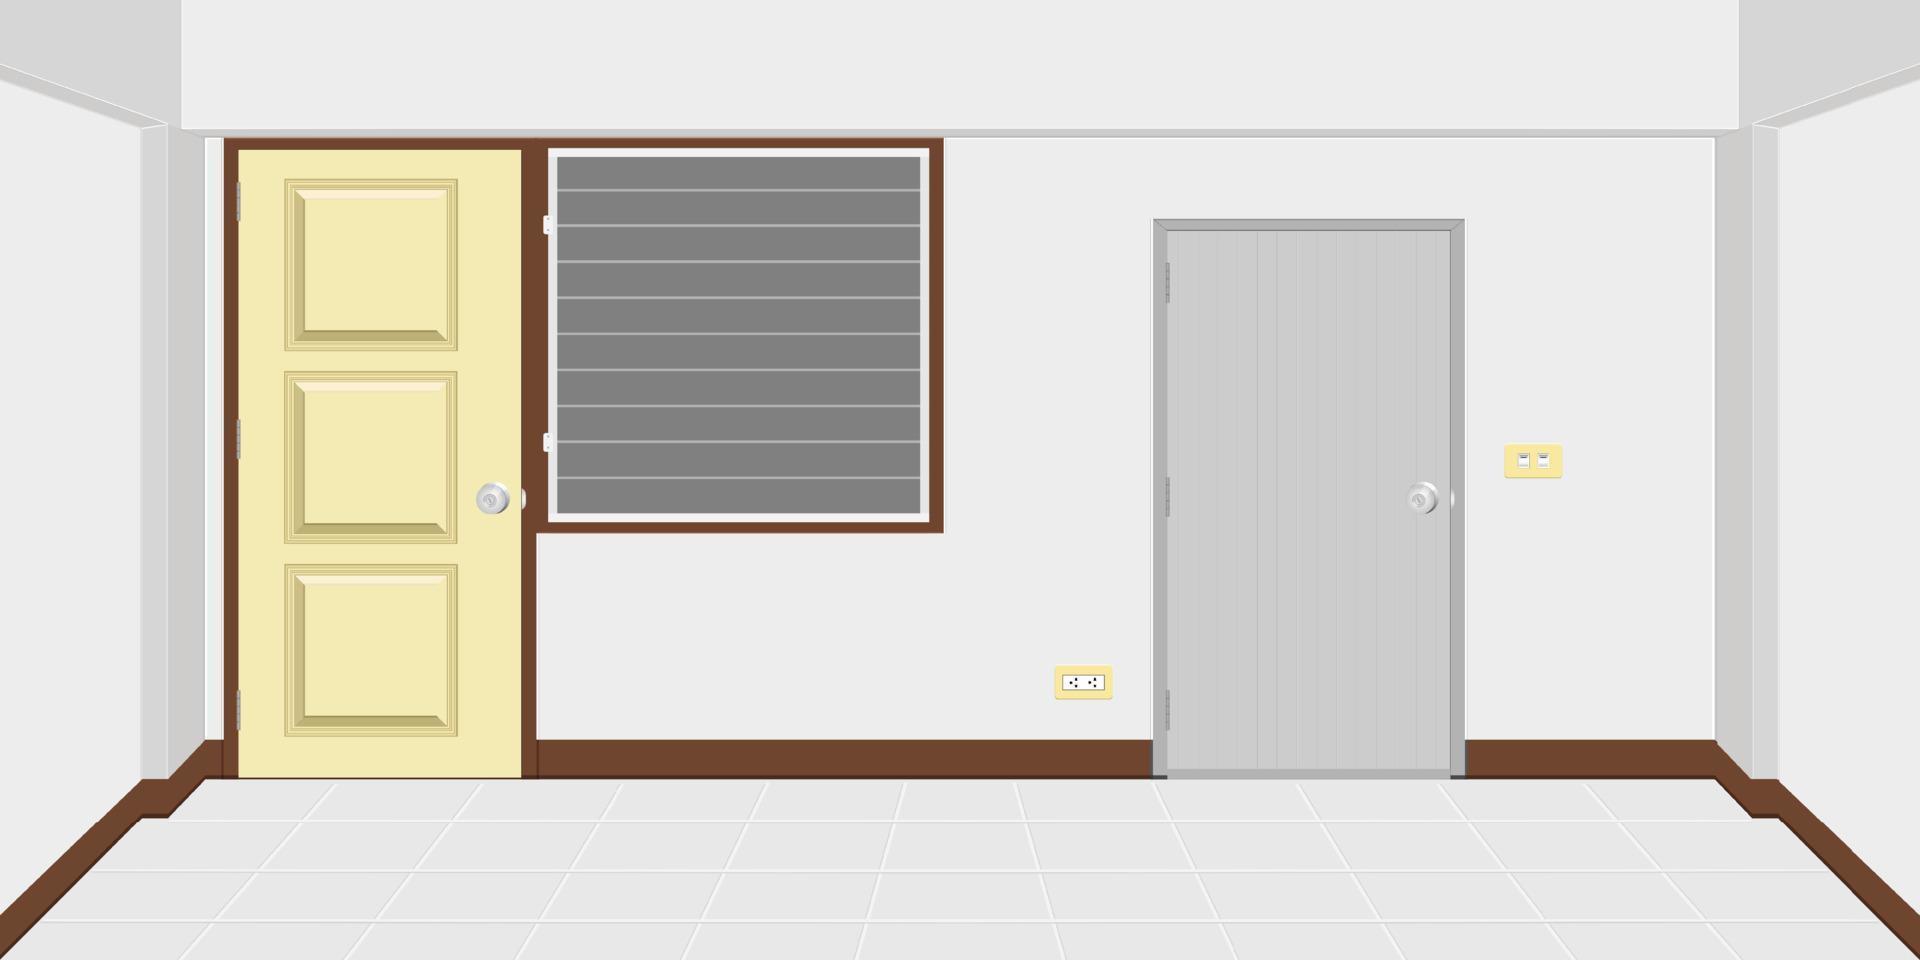 arquitetura dentro do apartamento ou quarto da casa com porta traseira do batente do banheiro. ilustração vetorial eps10 vetor